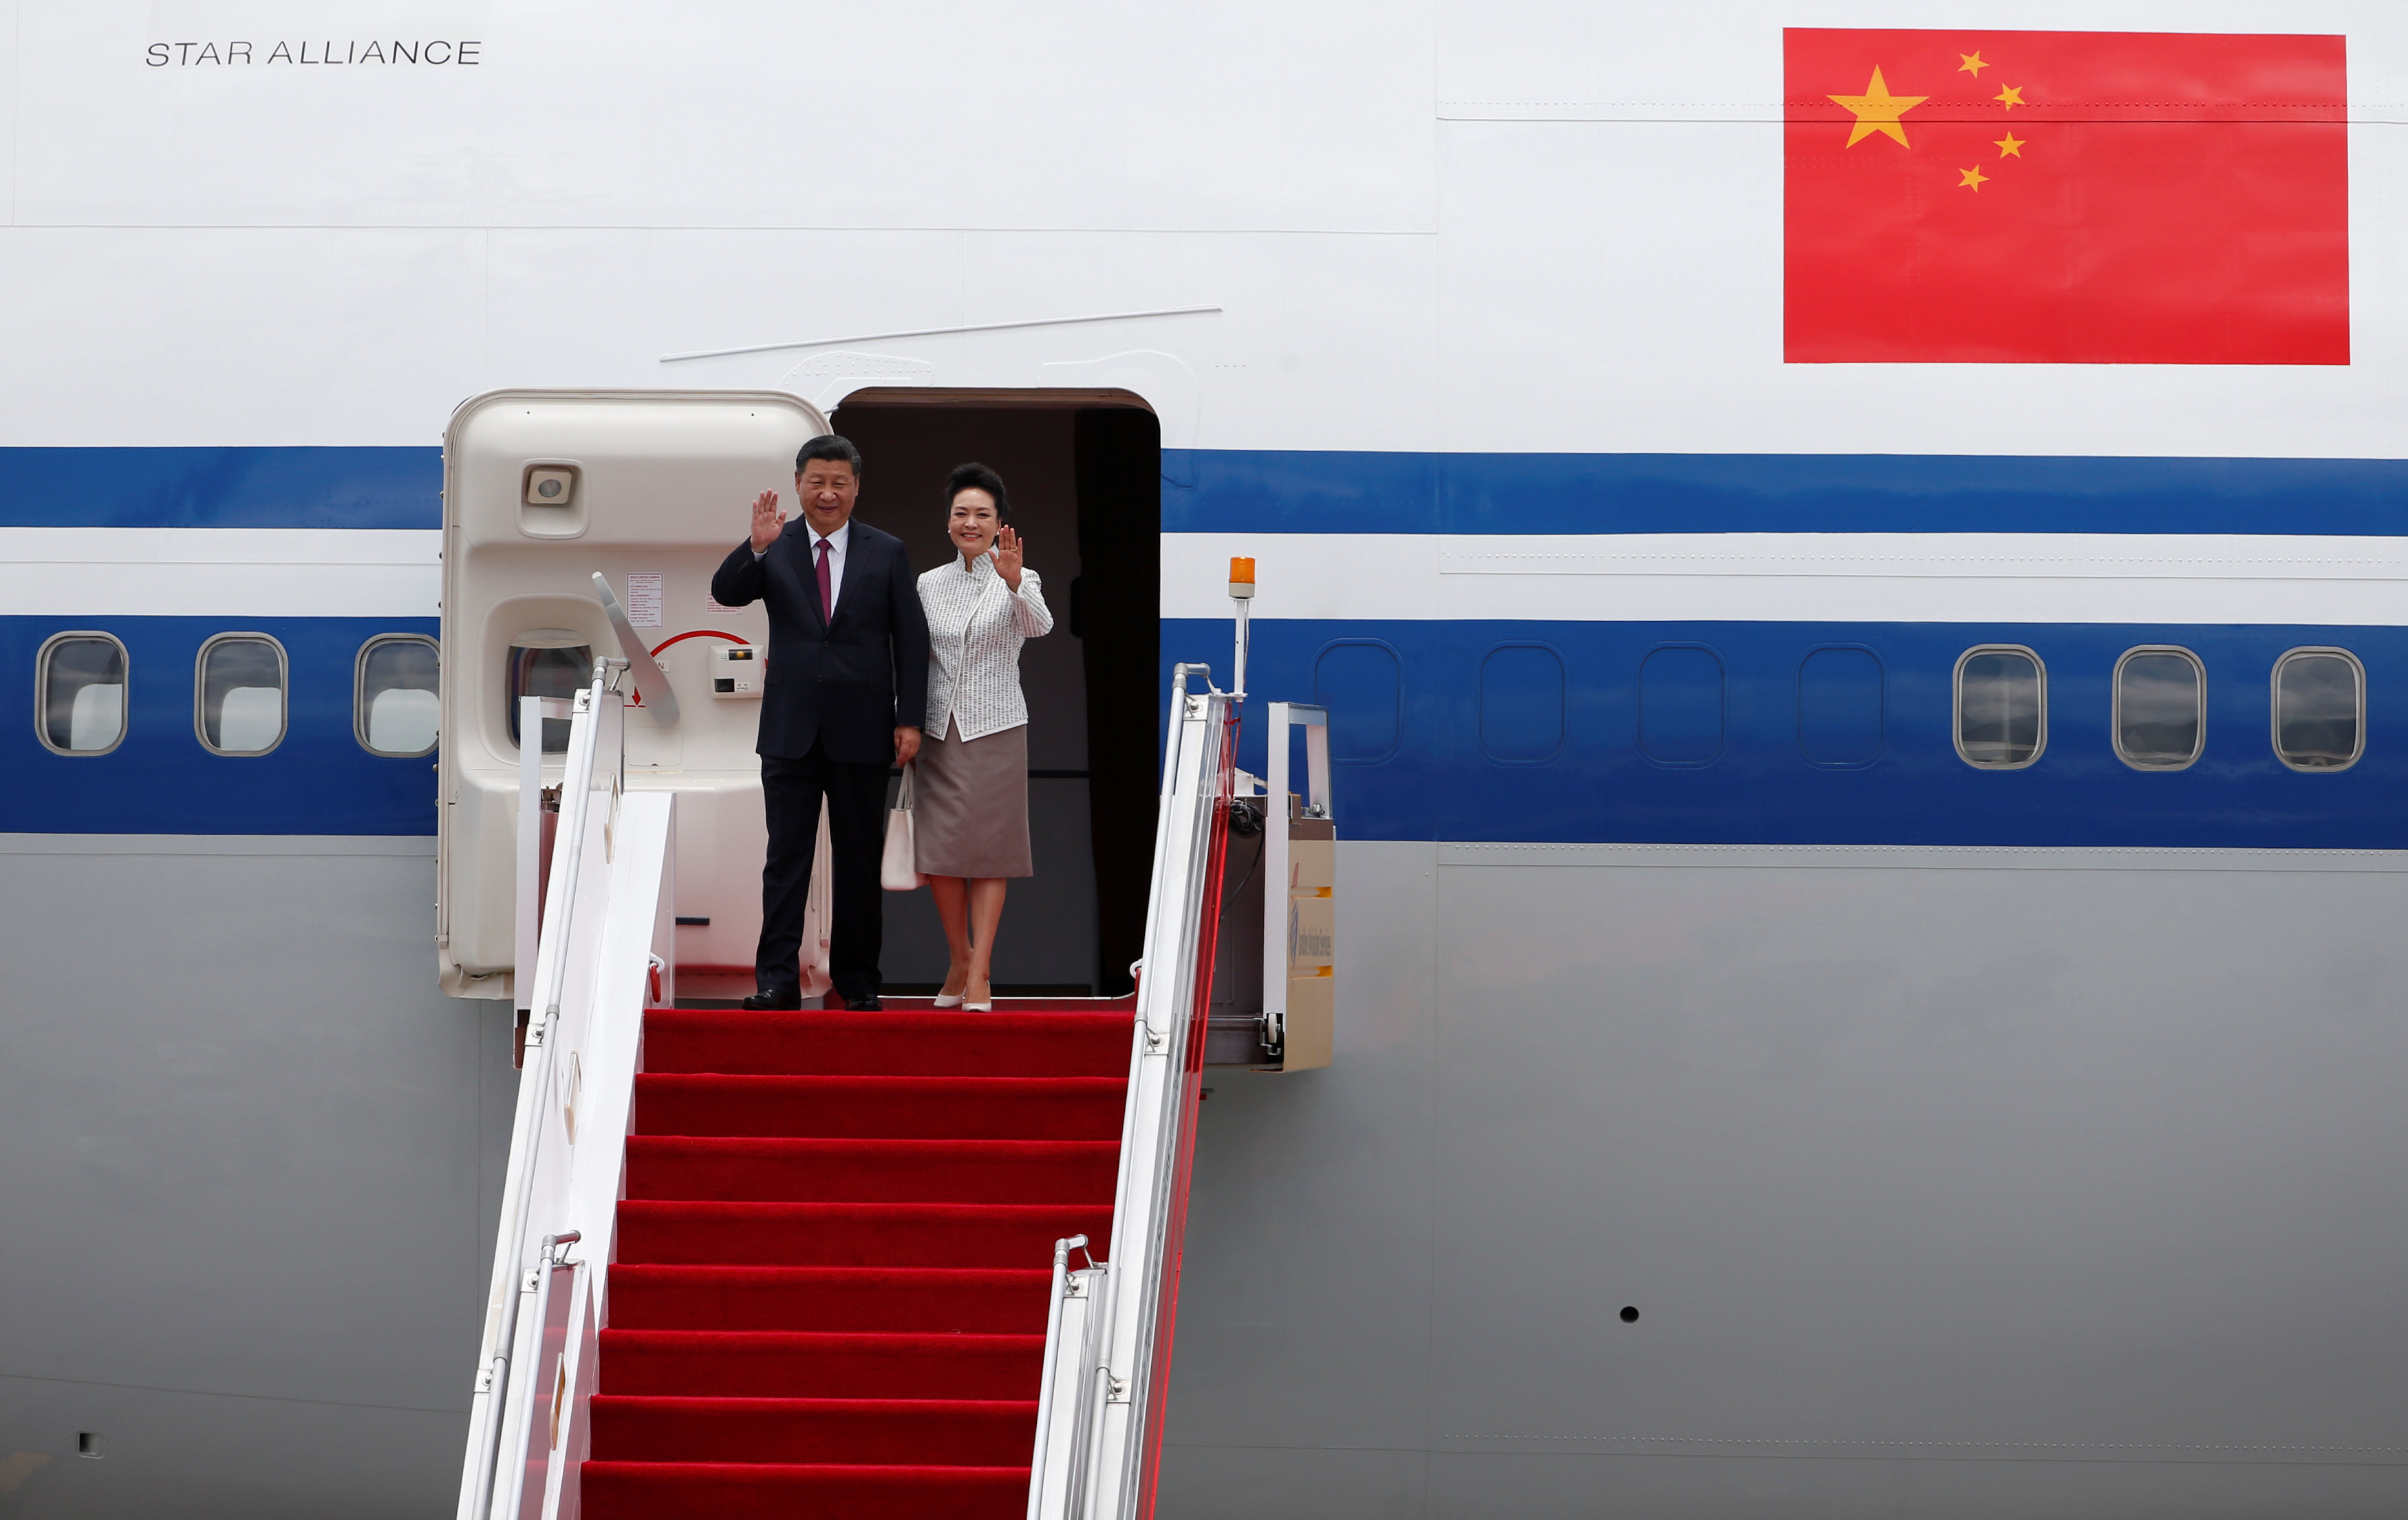 وصول الرئيس الصينى وزوجتة إلى هونج كونج